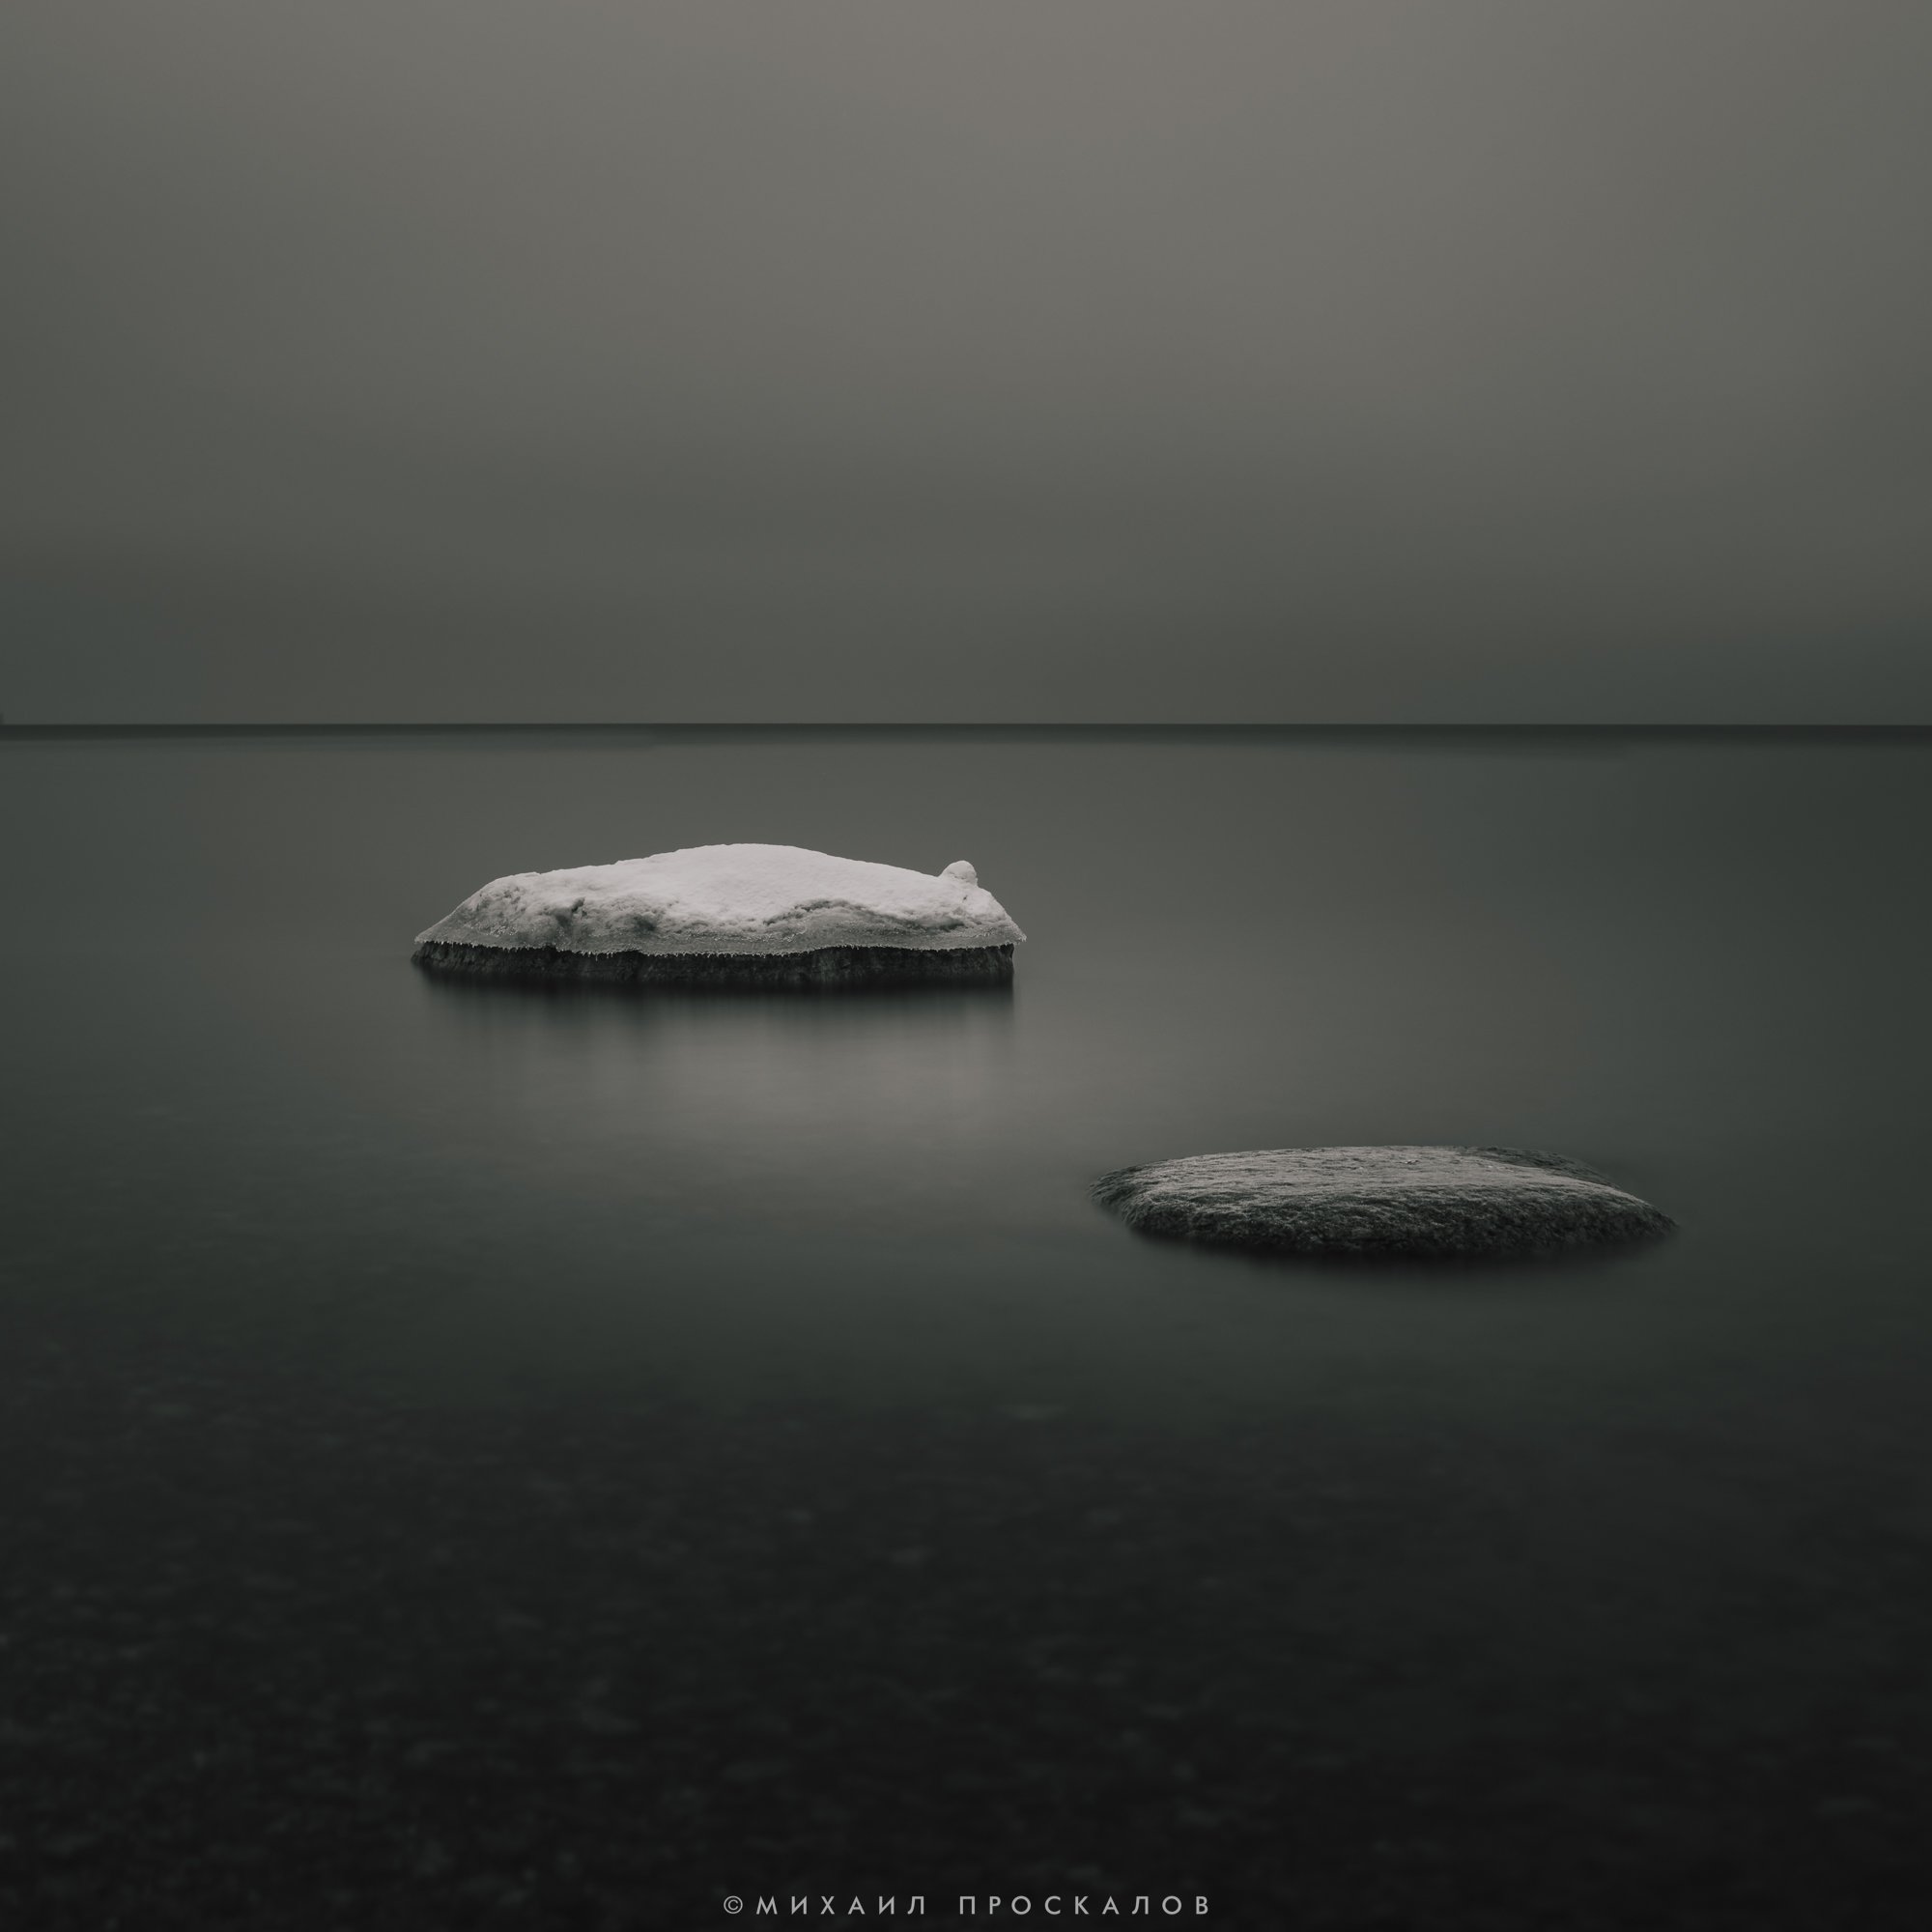 Черно-белое, пейзаж, длинная выдержка, панорама, приода, камни, Михаил Проскалов